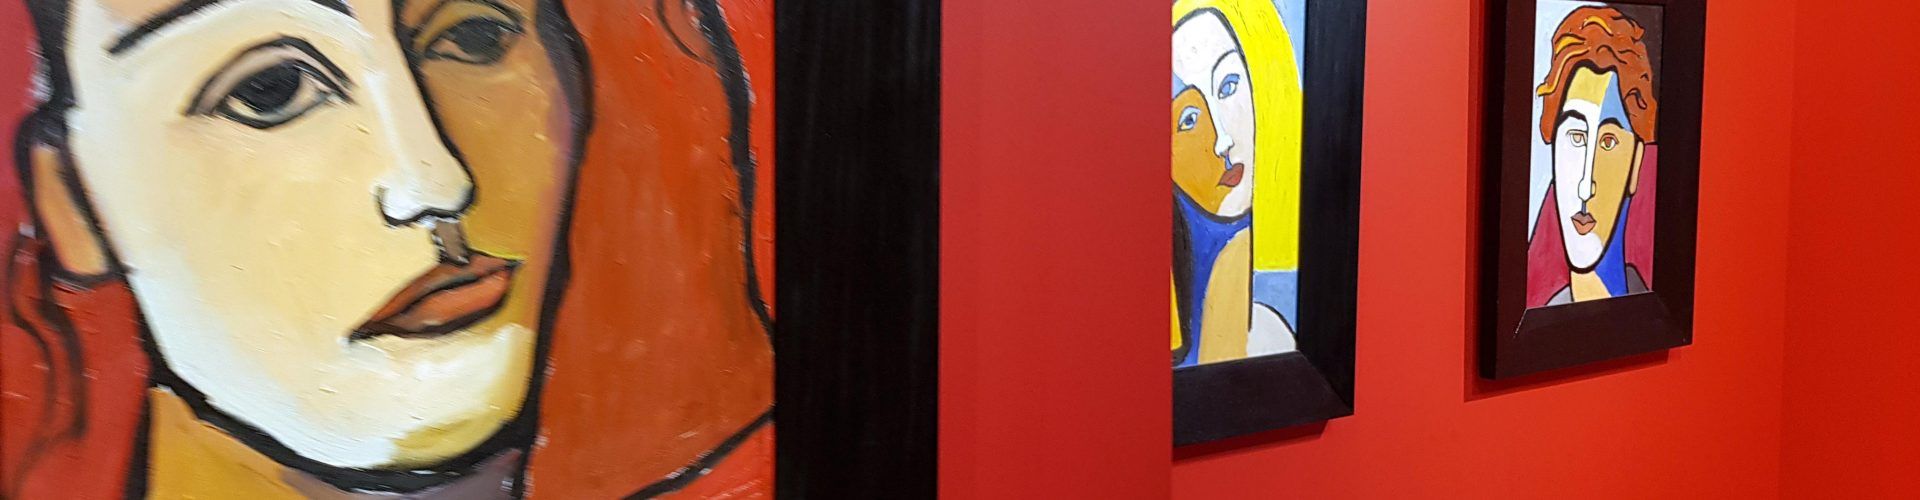 Exposició “Dos dones-dos artistes” a l’auditori de Vinaròs